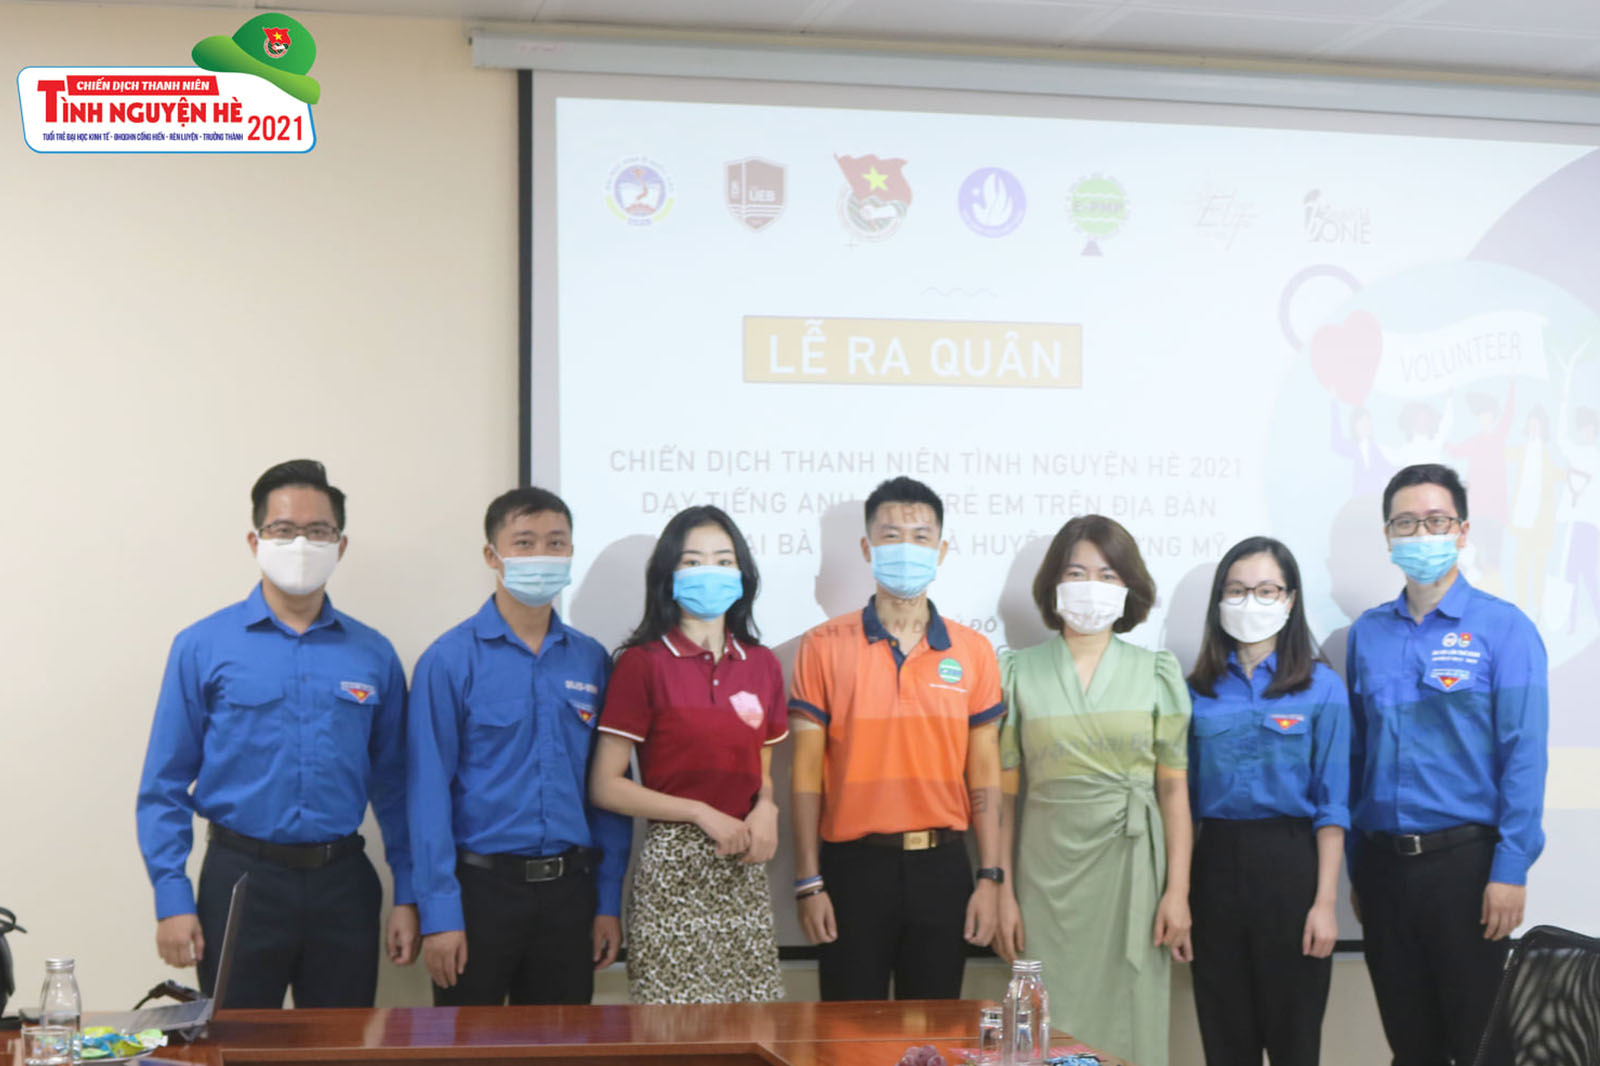 Đoàn Thanh niên trường Đại học Kinh tế phối hợp tổ chức ra quân tình nguyện dạy tiếng Anh miễn phí cho học sinh Hà Nội